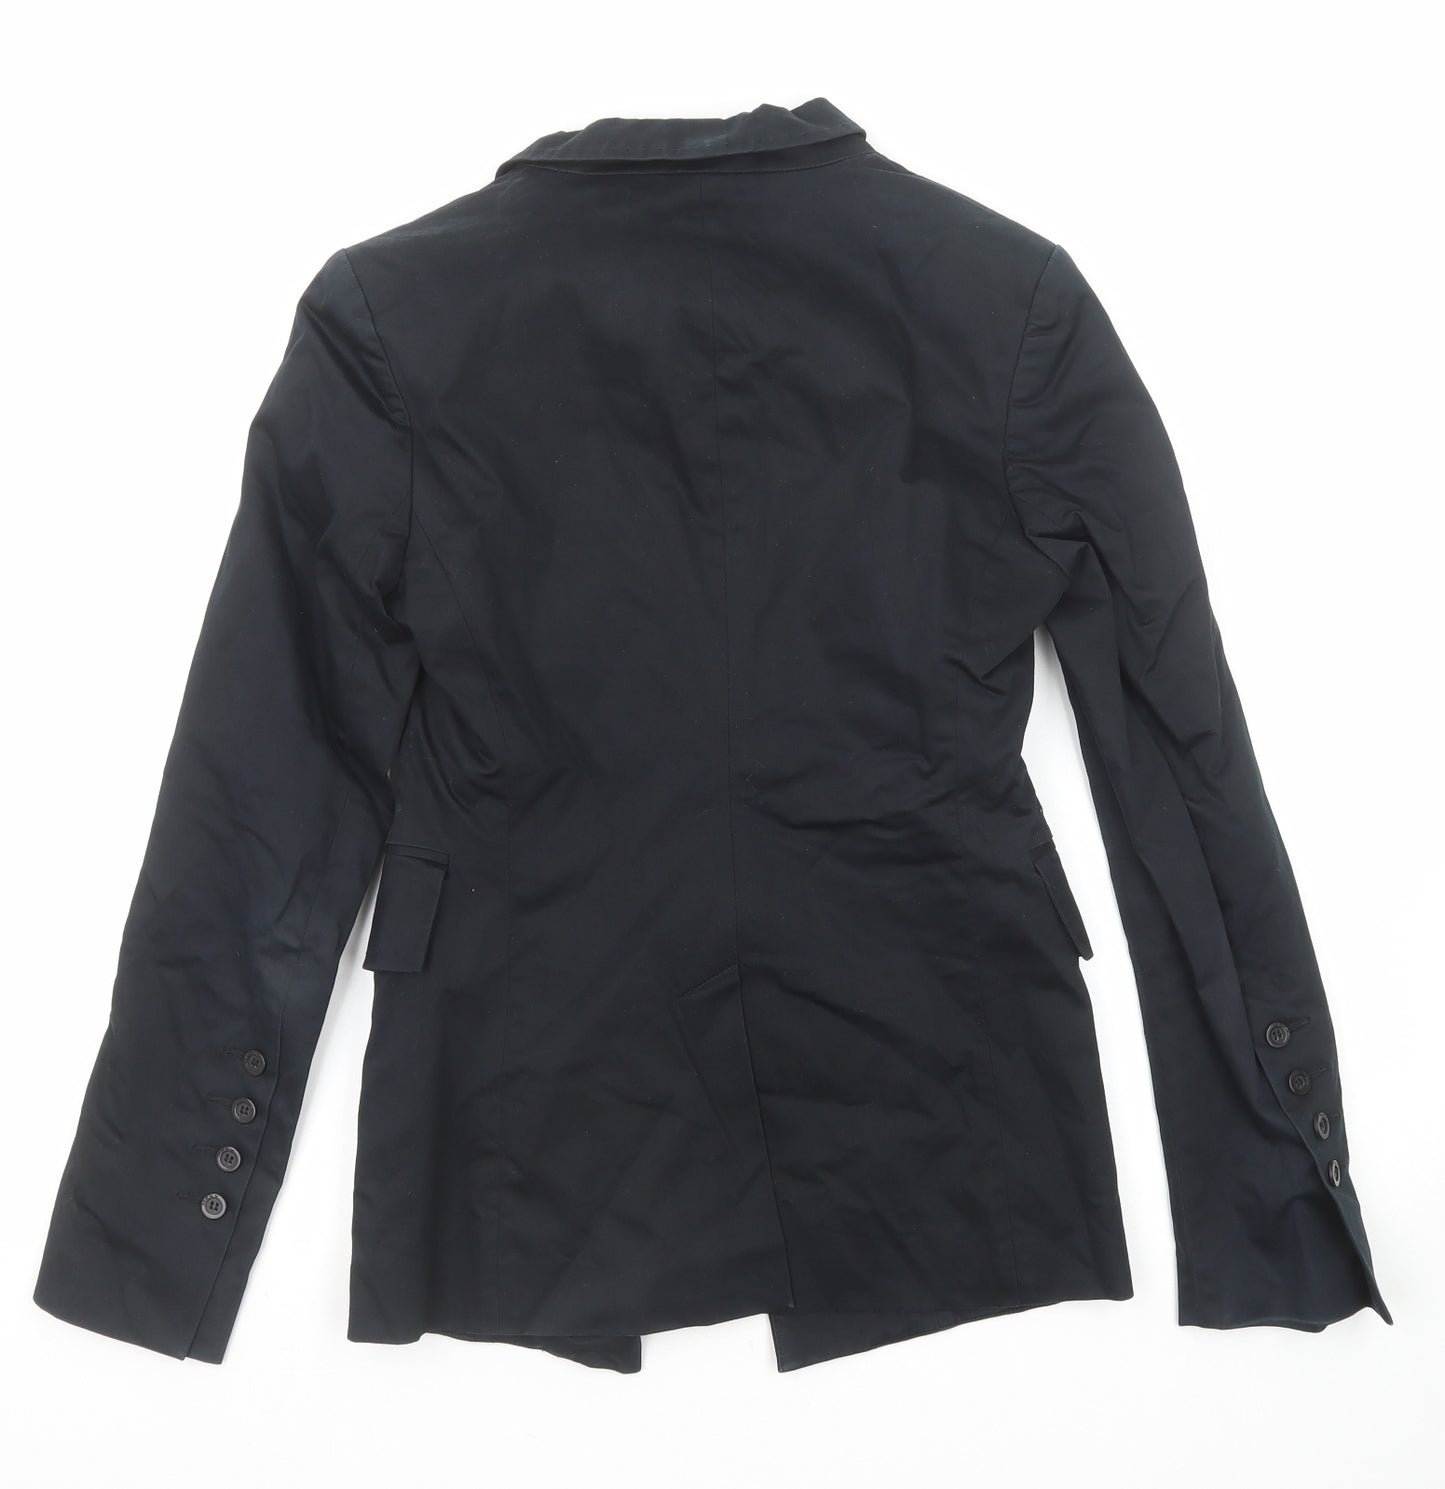 Mexx Womens Black Jacket Blazer Size 10 Button